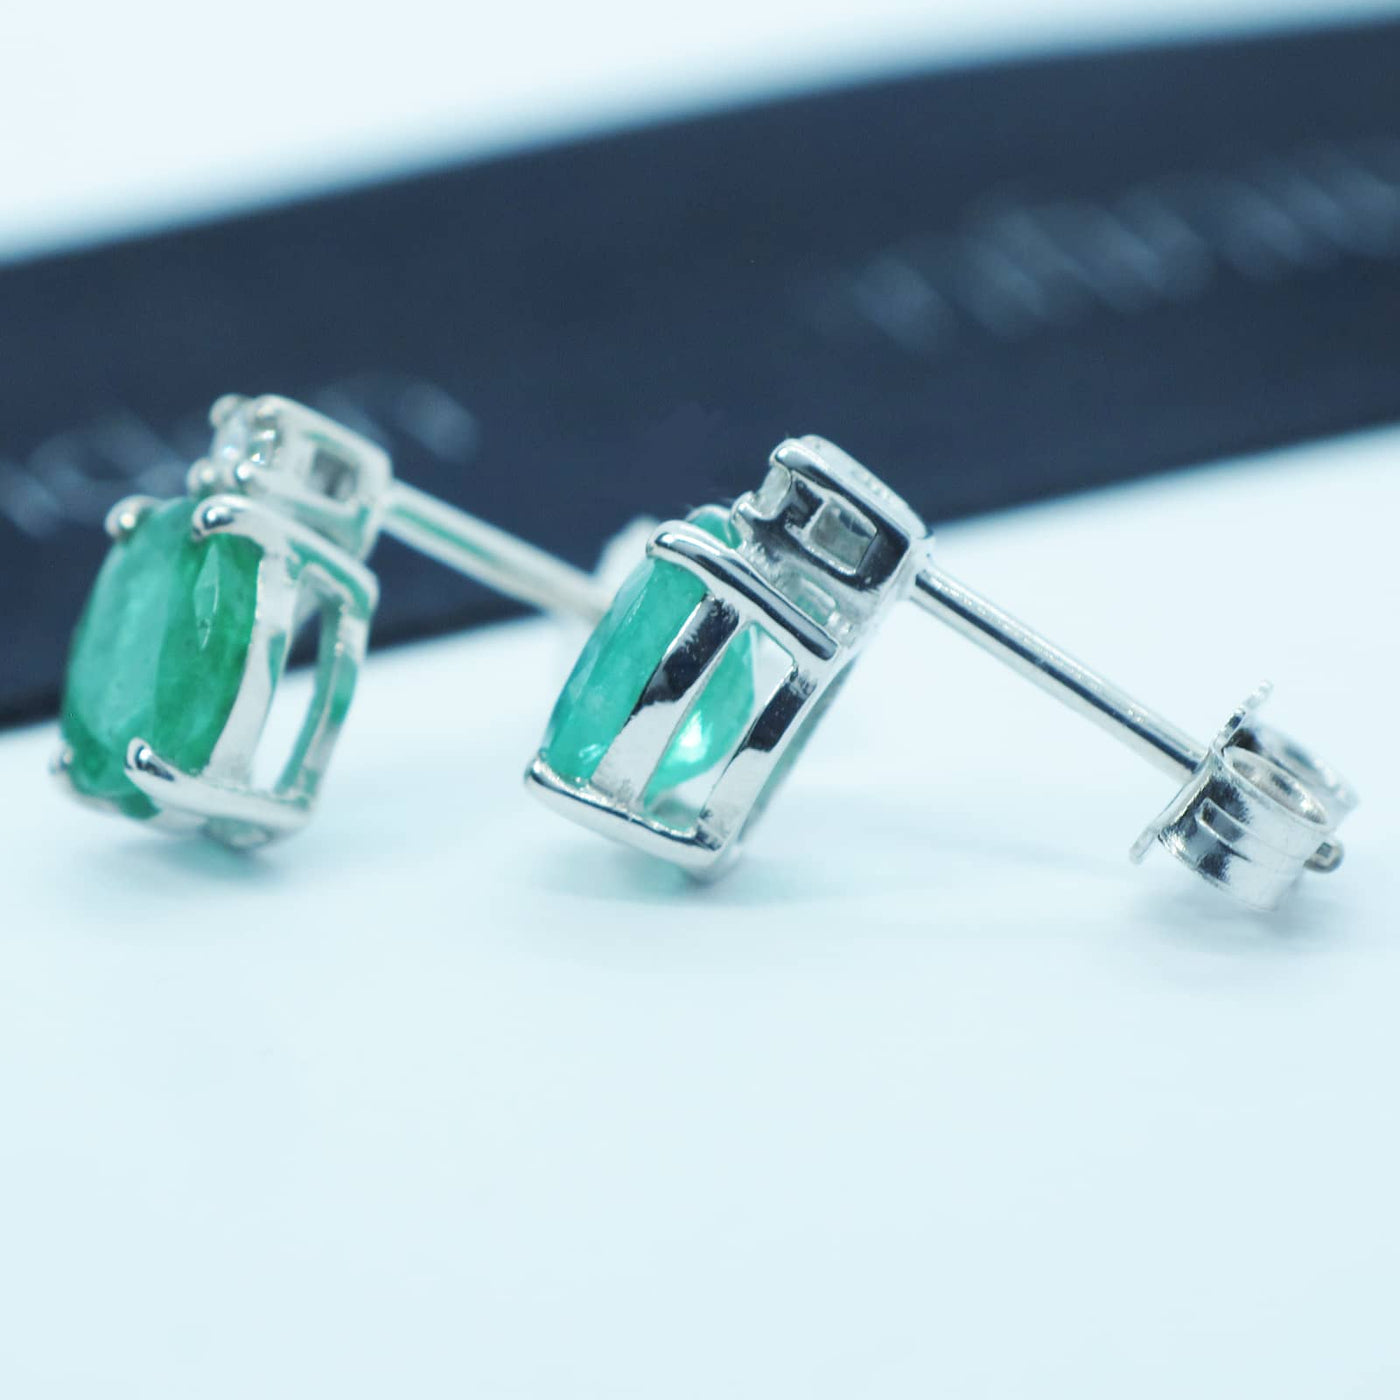 Orecchini Smeraldi e Diamanti - E190